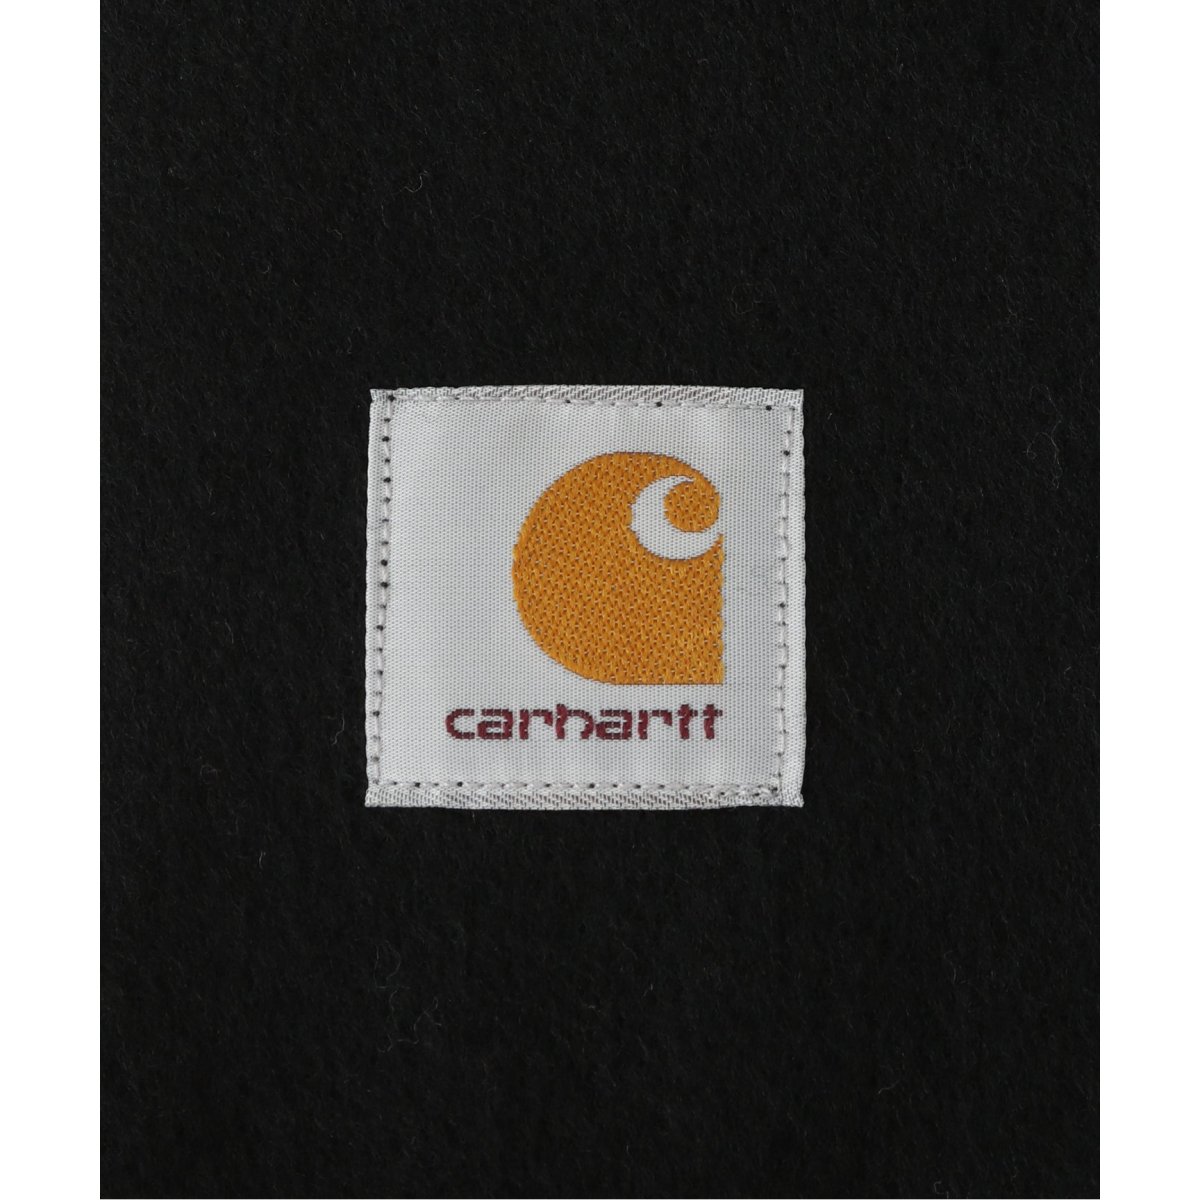 CARHARTT WIP / カーハート ダブリューアイピー】CLAN SCARF / クラン